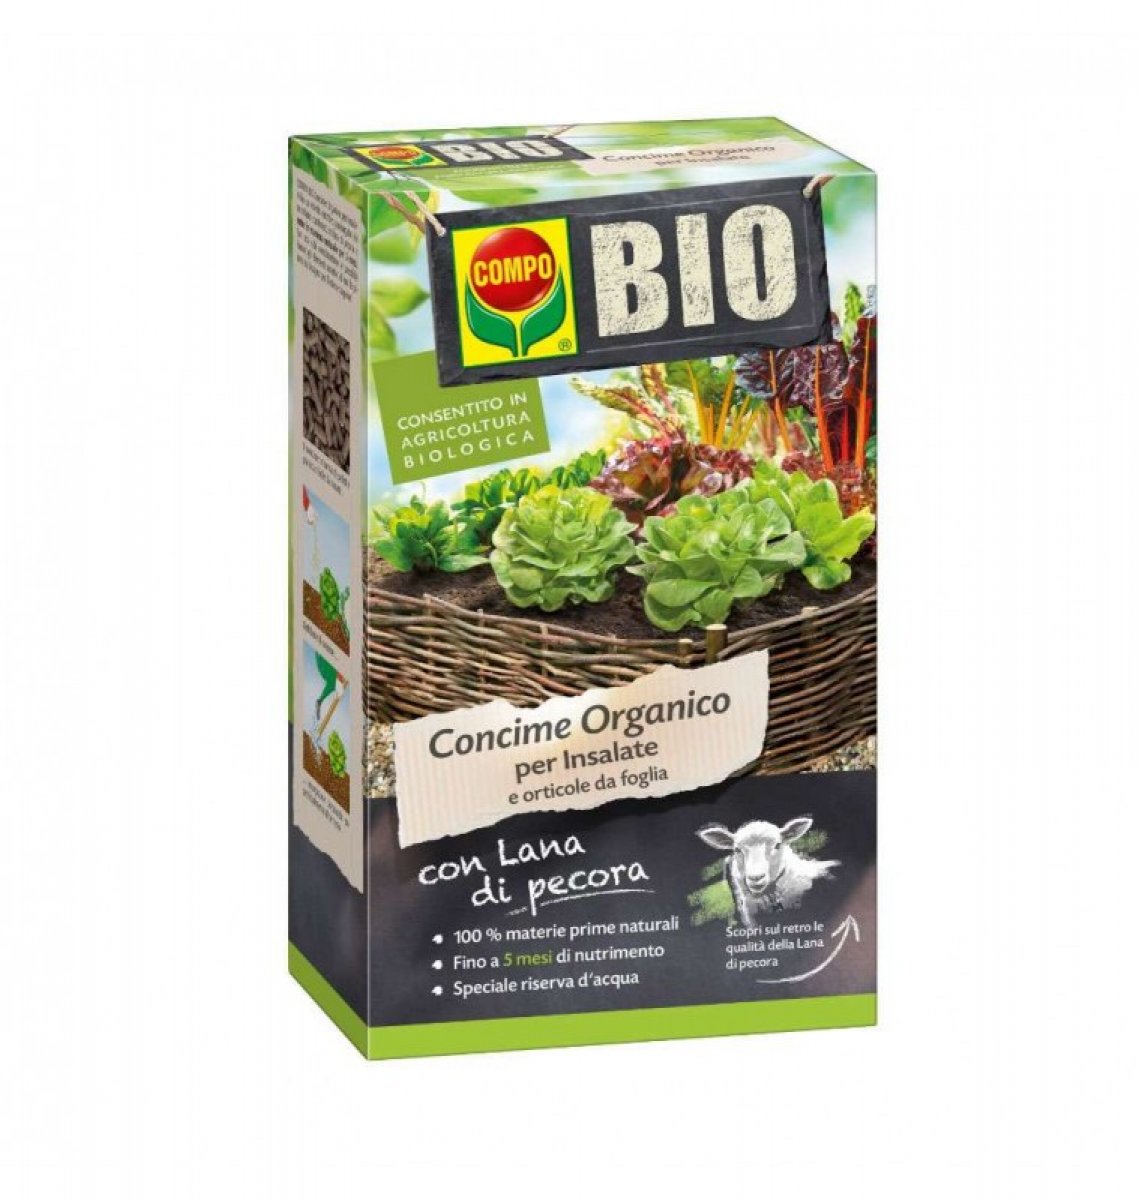 Concime organico per insalate Compo - 750 g concime liquido per insalate di Compo